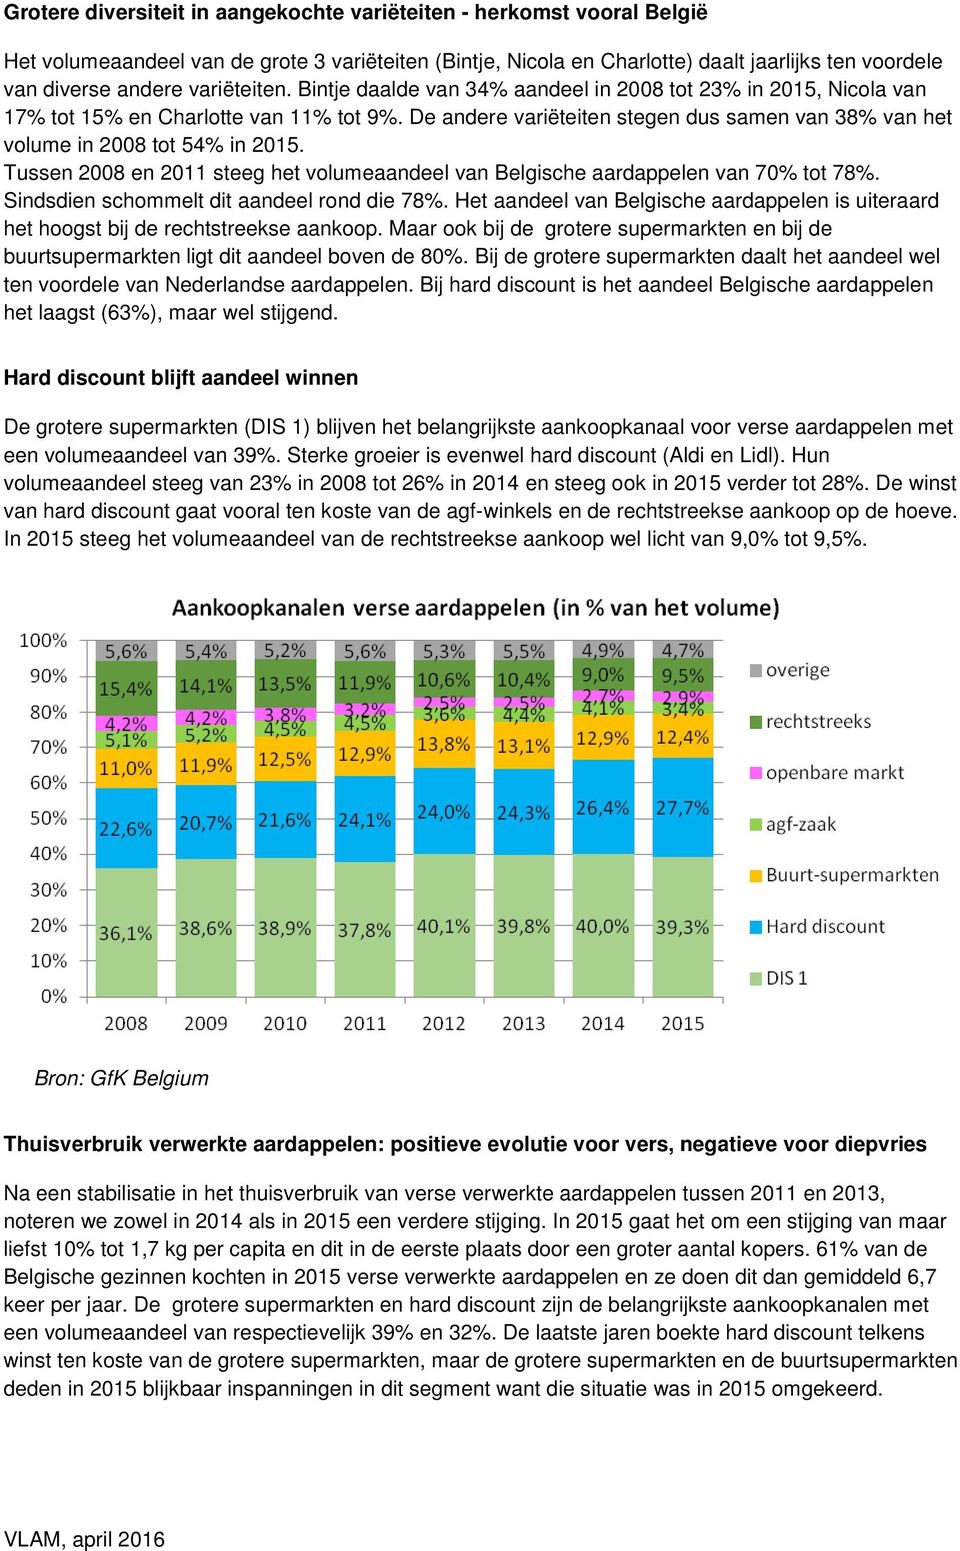 De andere variëteiten stegen dus samen van 38% van het volume in 2008 tot 54% in 2015. Tussen 2008 en 2011 steeg het volumeaandeel van Belgische aardappelen van 70% tot 78%.